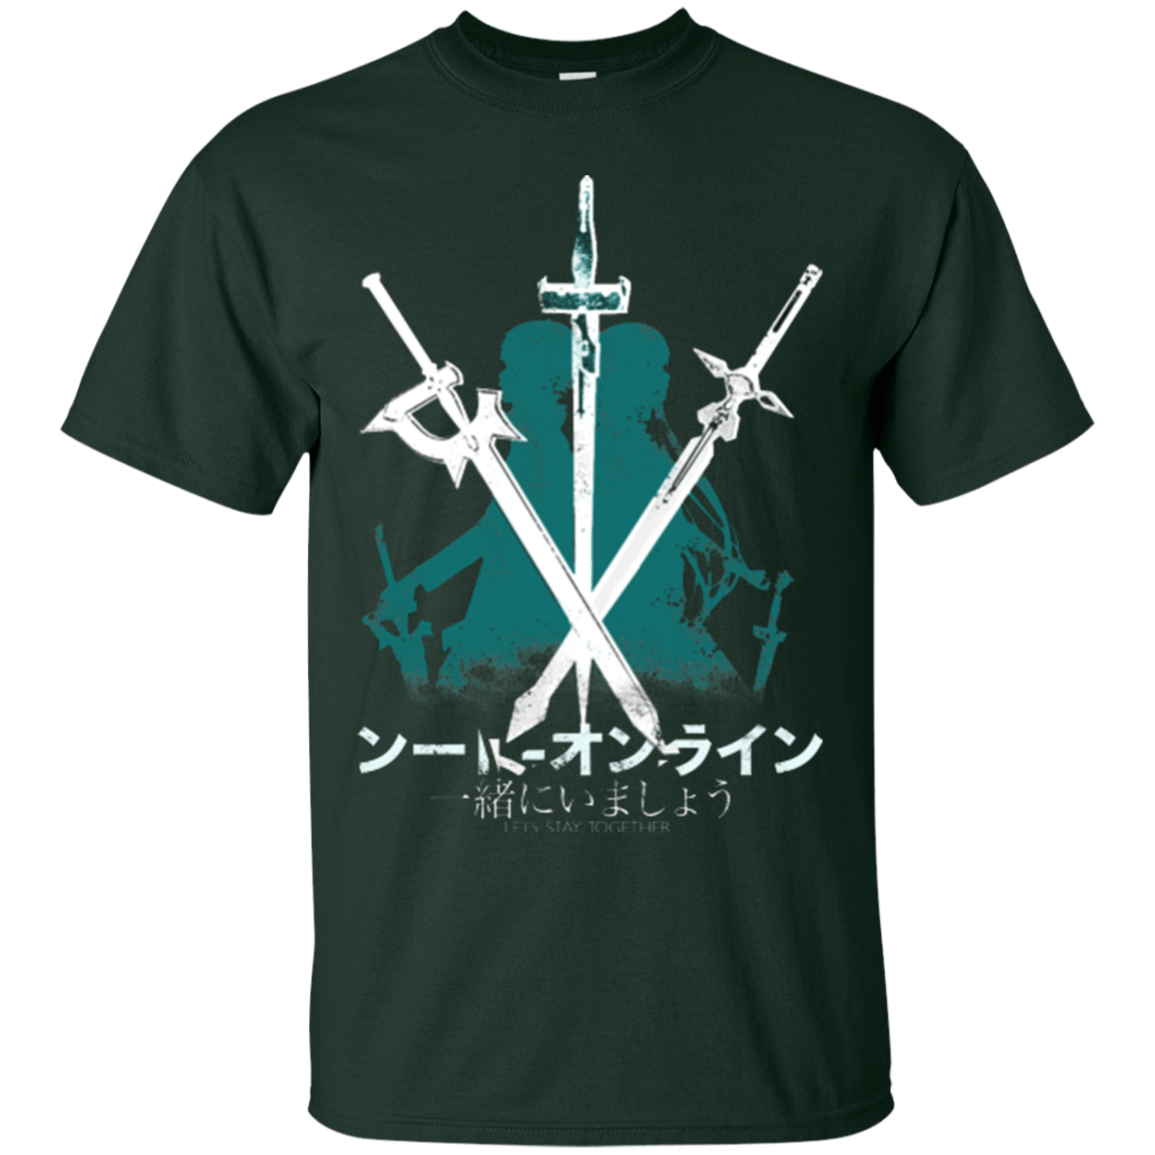 T-Shirts Forest Green / Small Sword Art T-Shirt